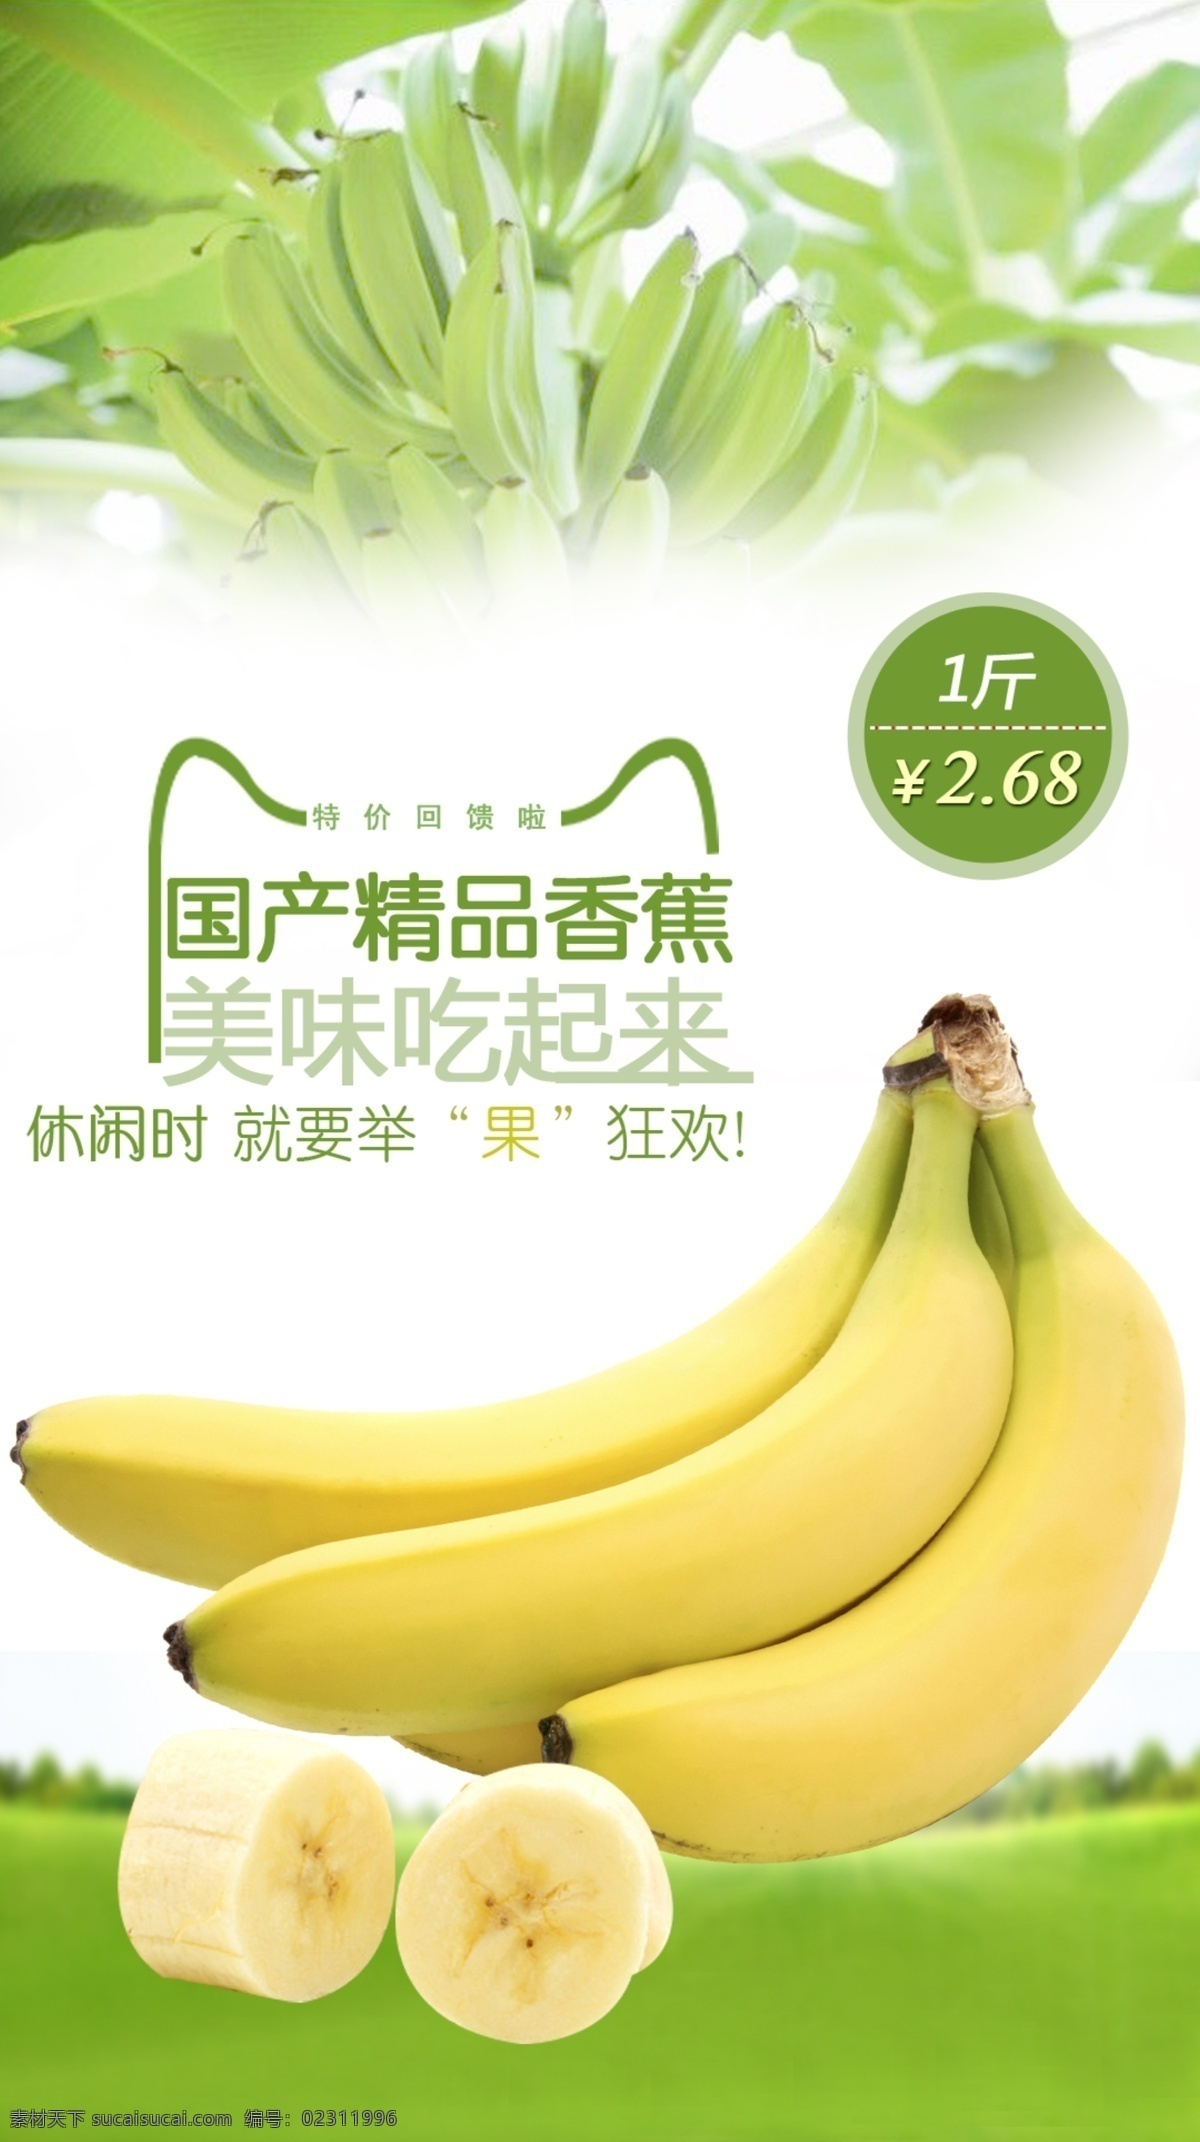 香蕉 水果 促销 淘宝 广告 banner 淘宝界面设计 特价 海报 淘宝素材 淘宝促销海报